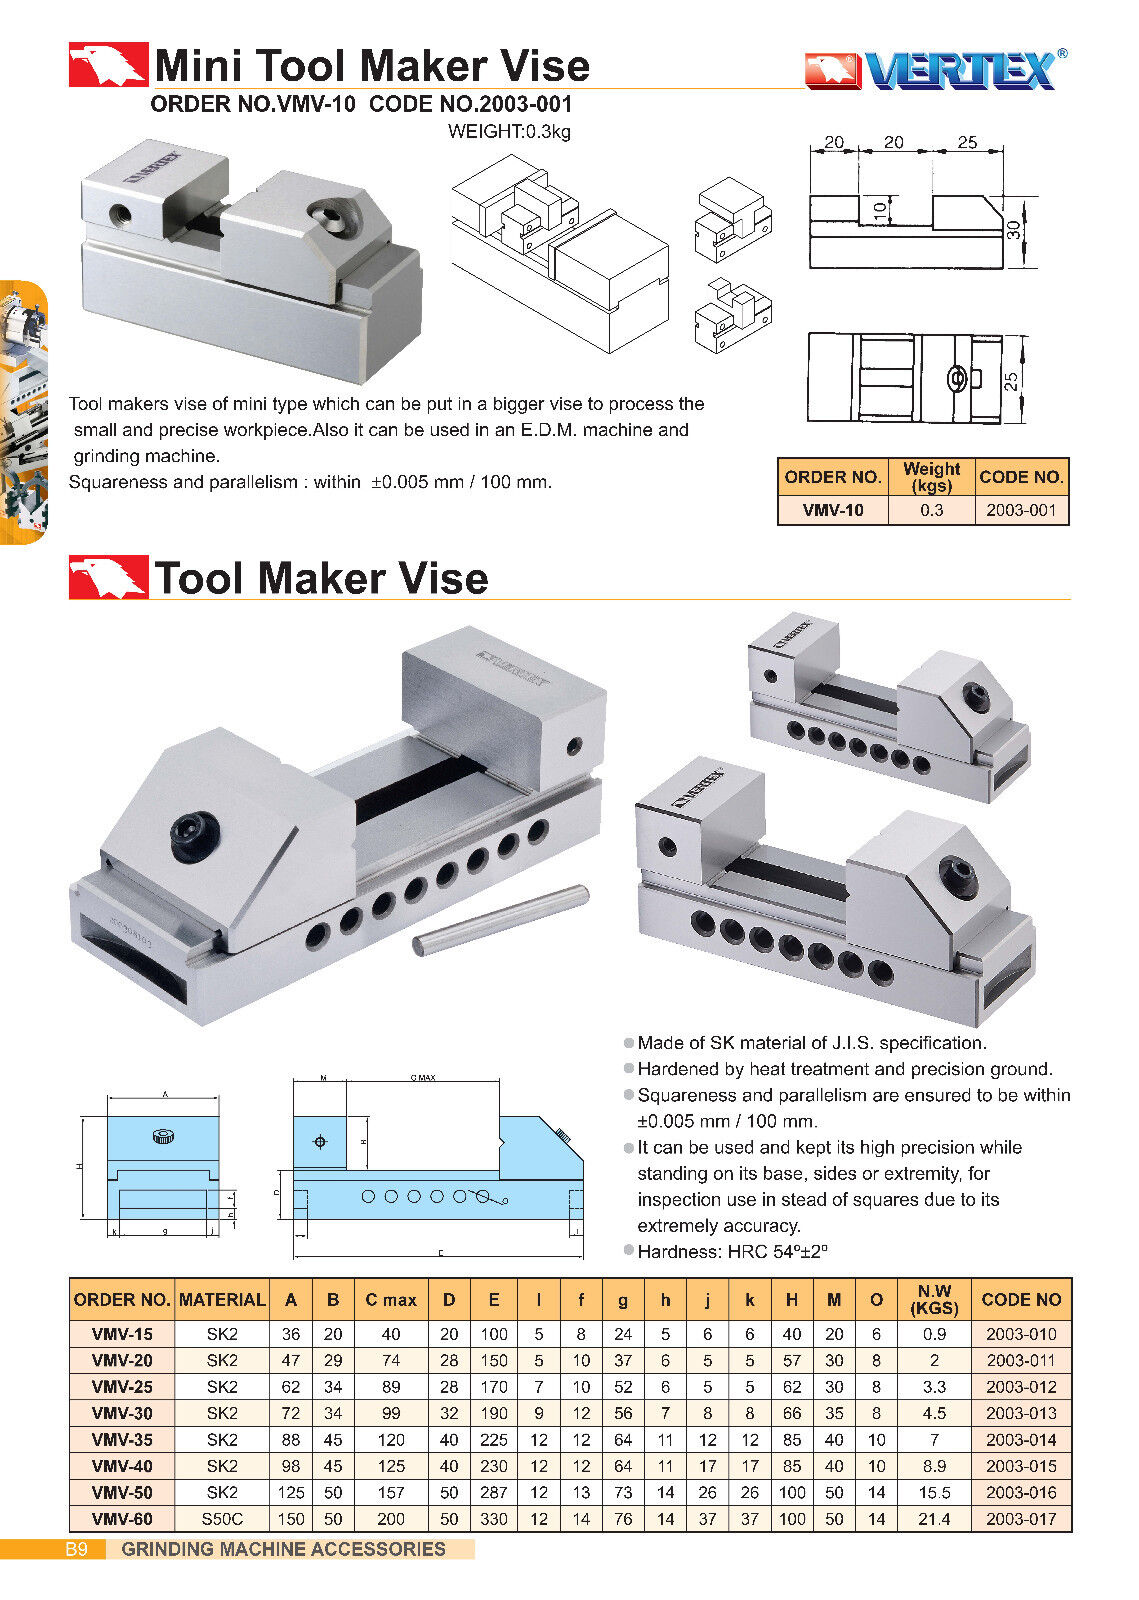 Mini tool maker vise